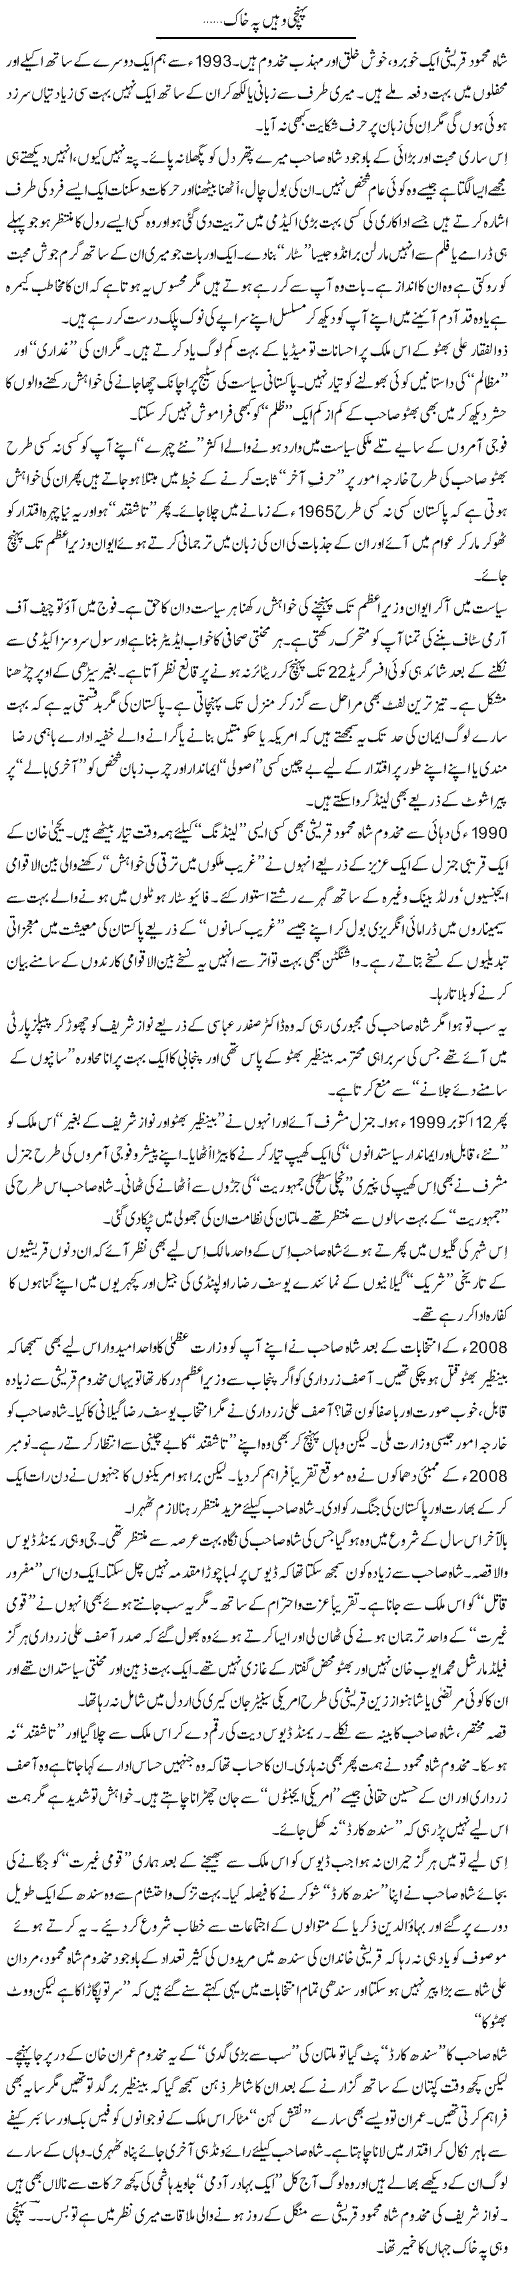 Shah Mehmood Express Column Nusrat Javed 9 July 2011